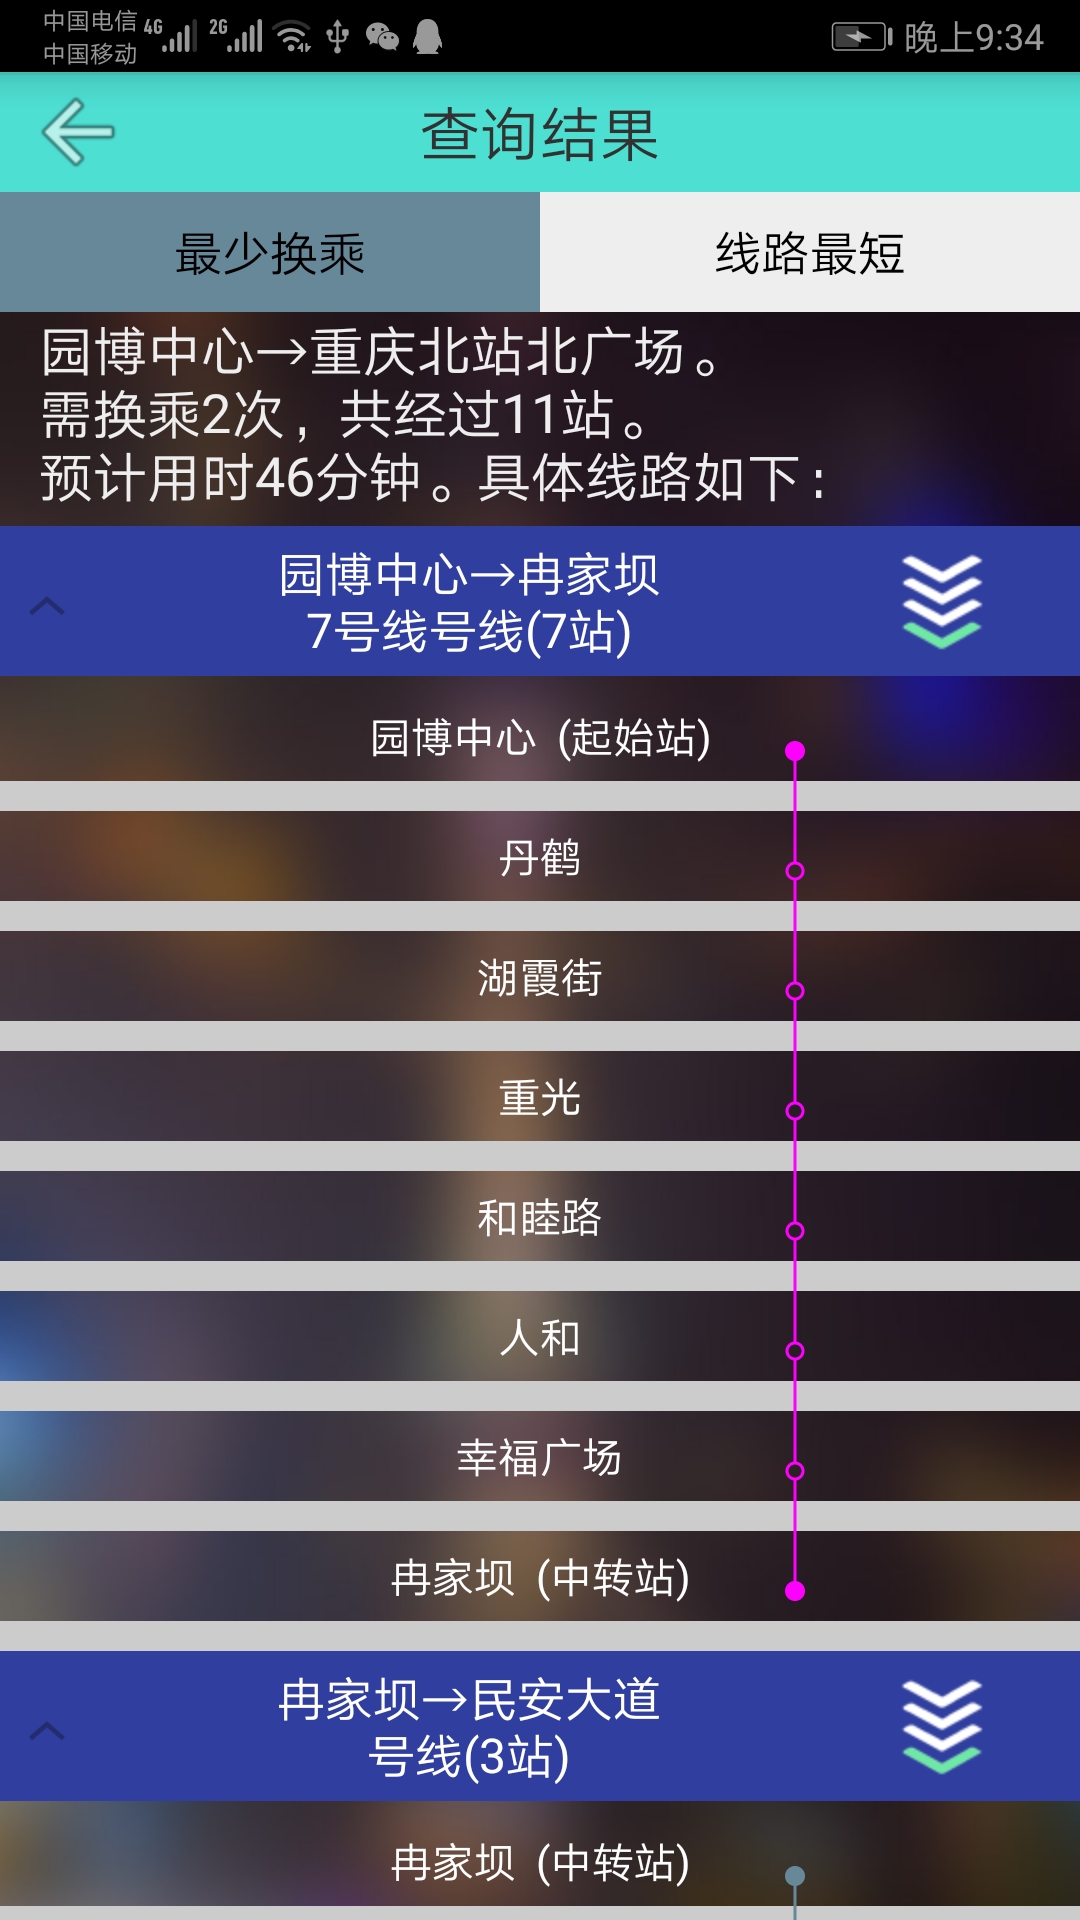 重庆地铁查询v1.6截图1